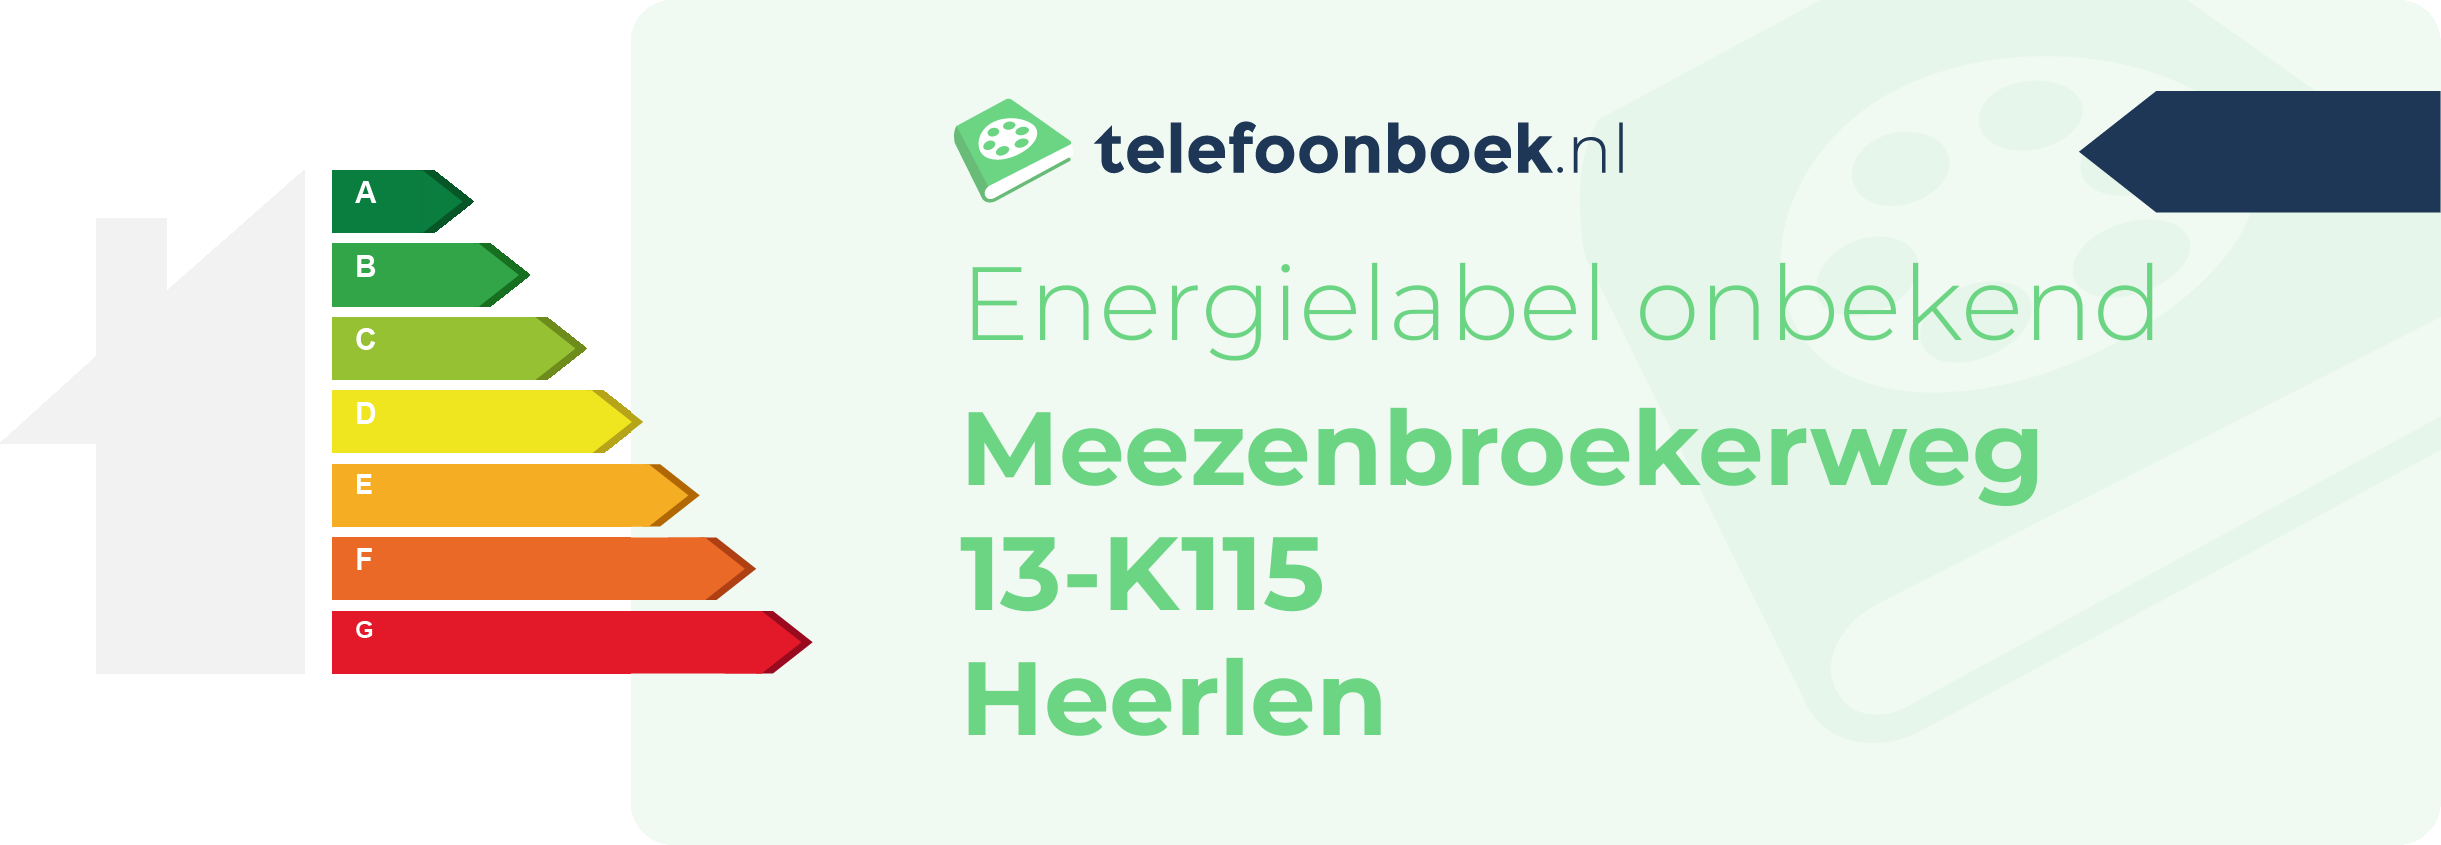 Energielabel Meezenbroekerweg 13-K115 Heerlen